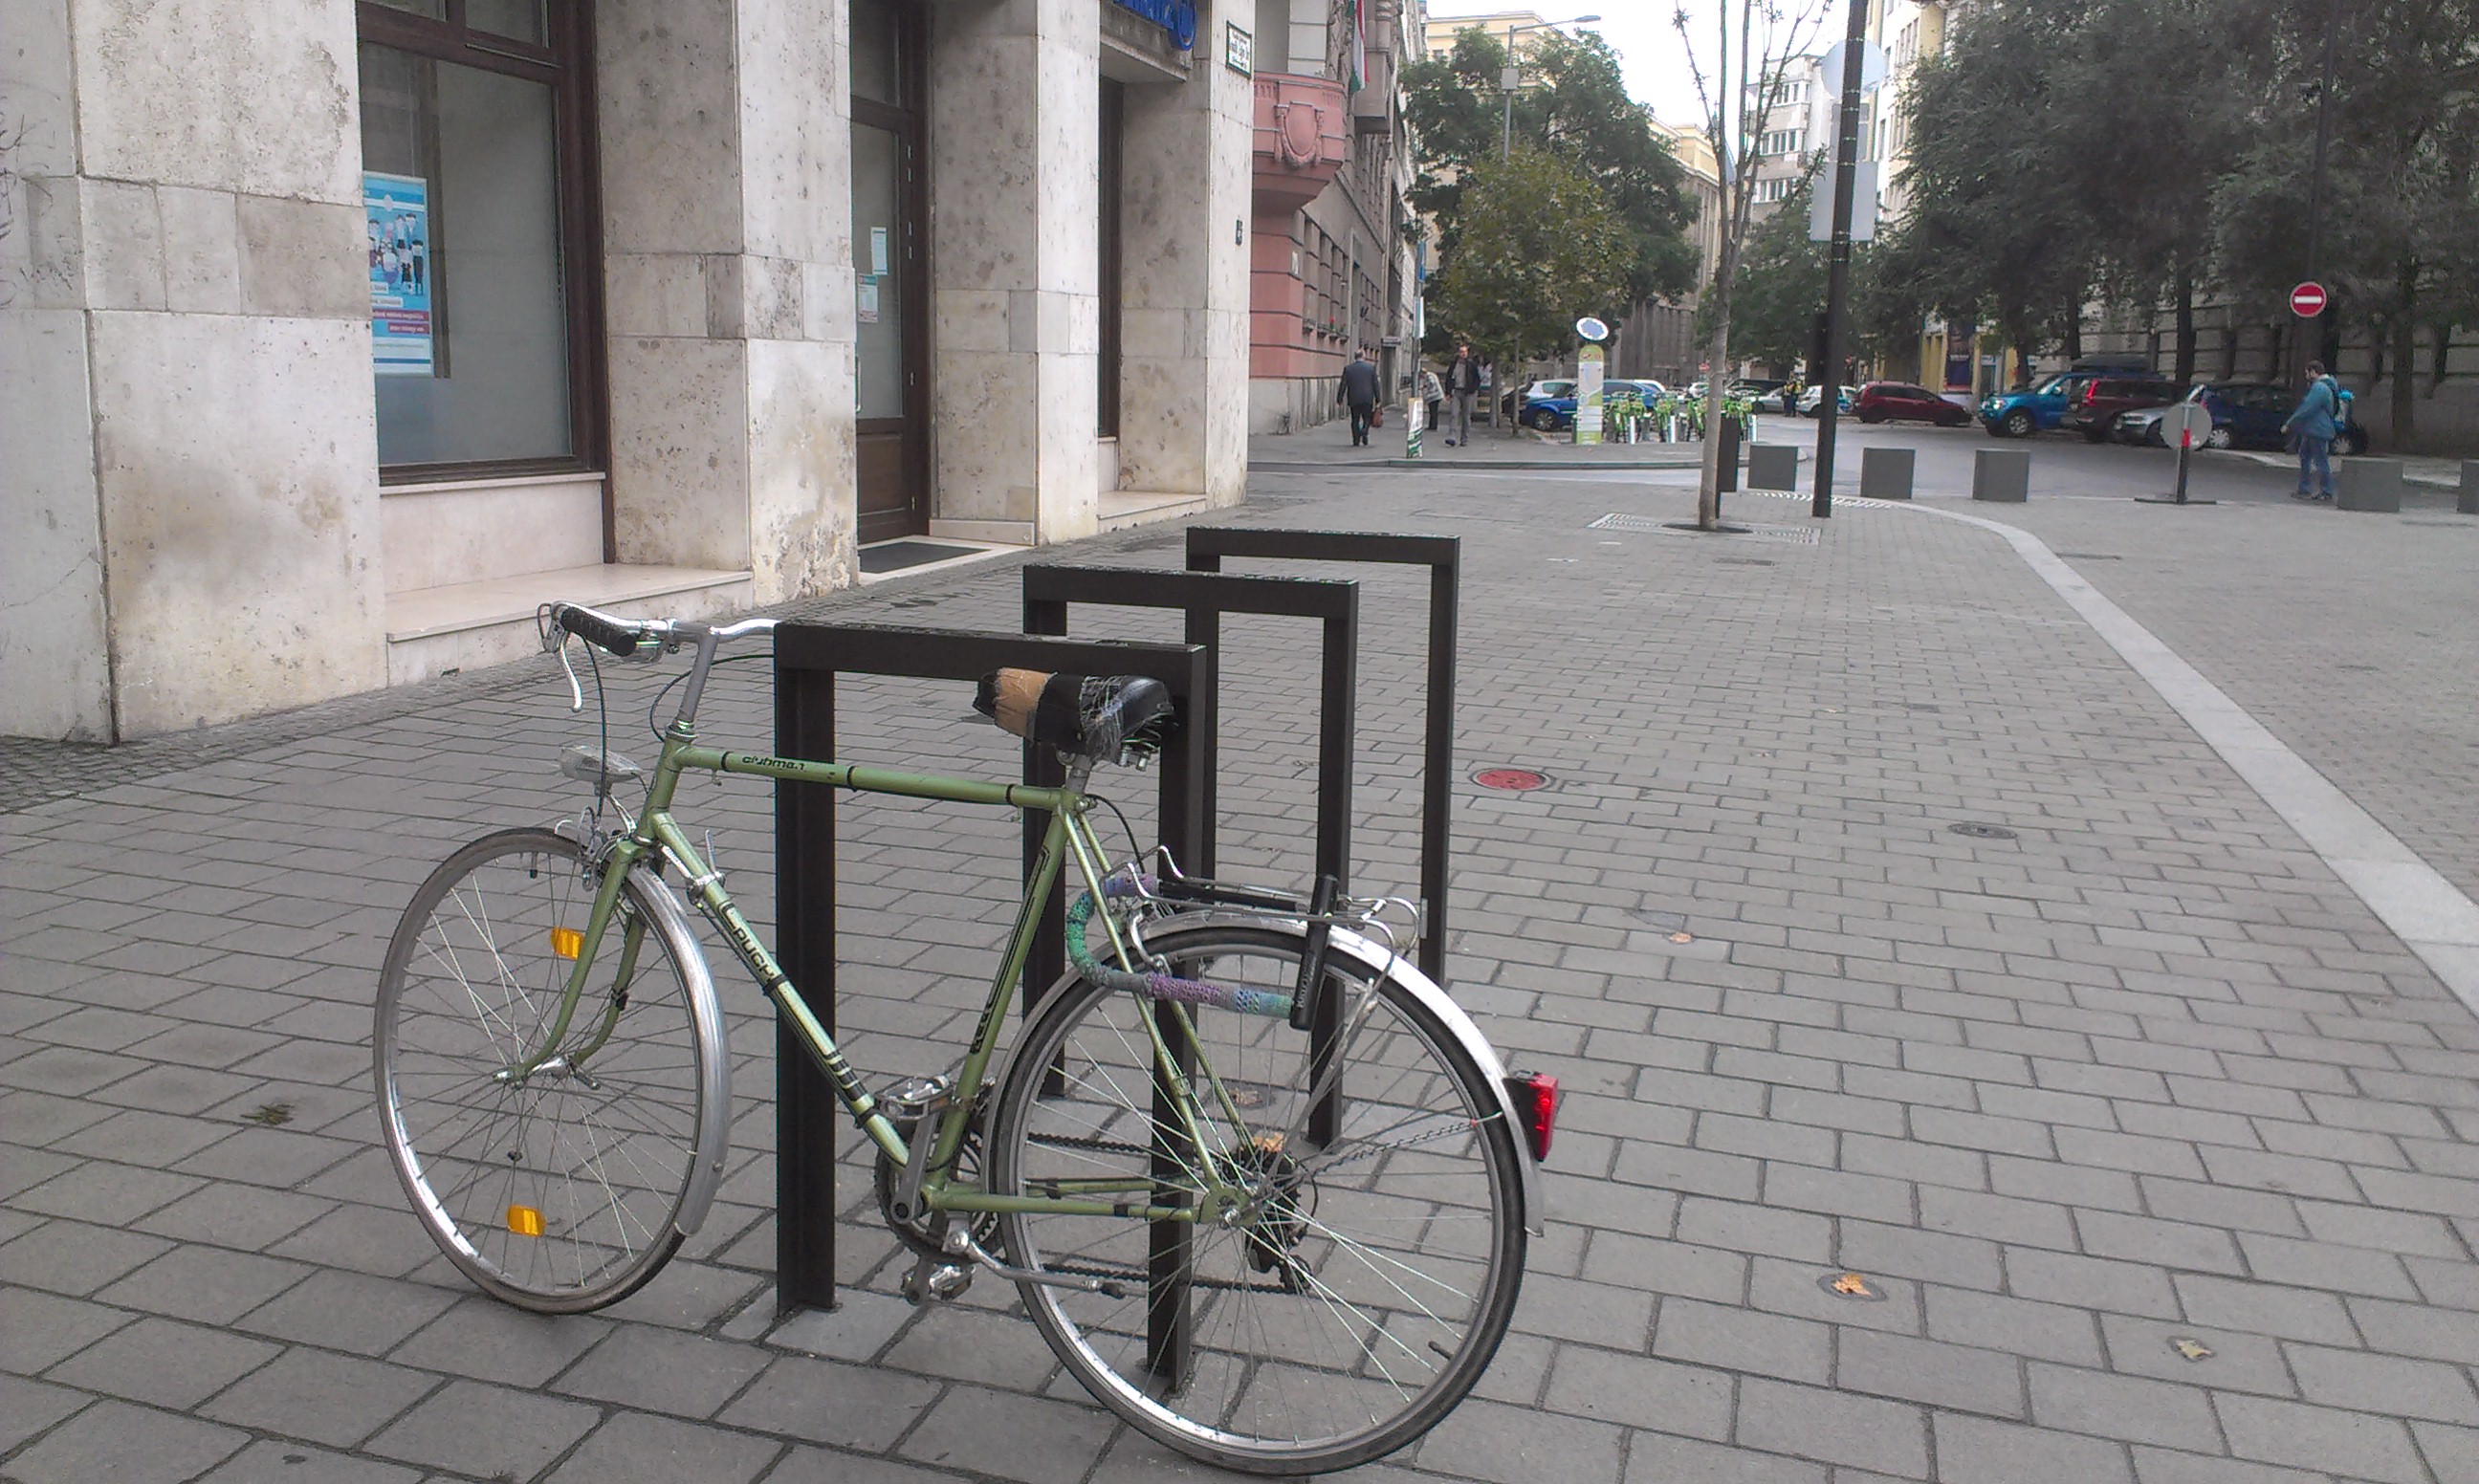  Ami drága, nem biztos, hogy jó - Kis magyar kerékpártámasz-történet